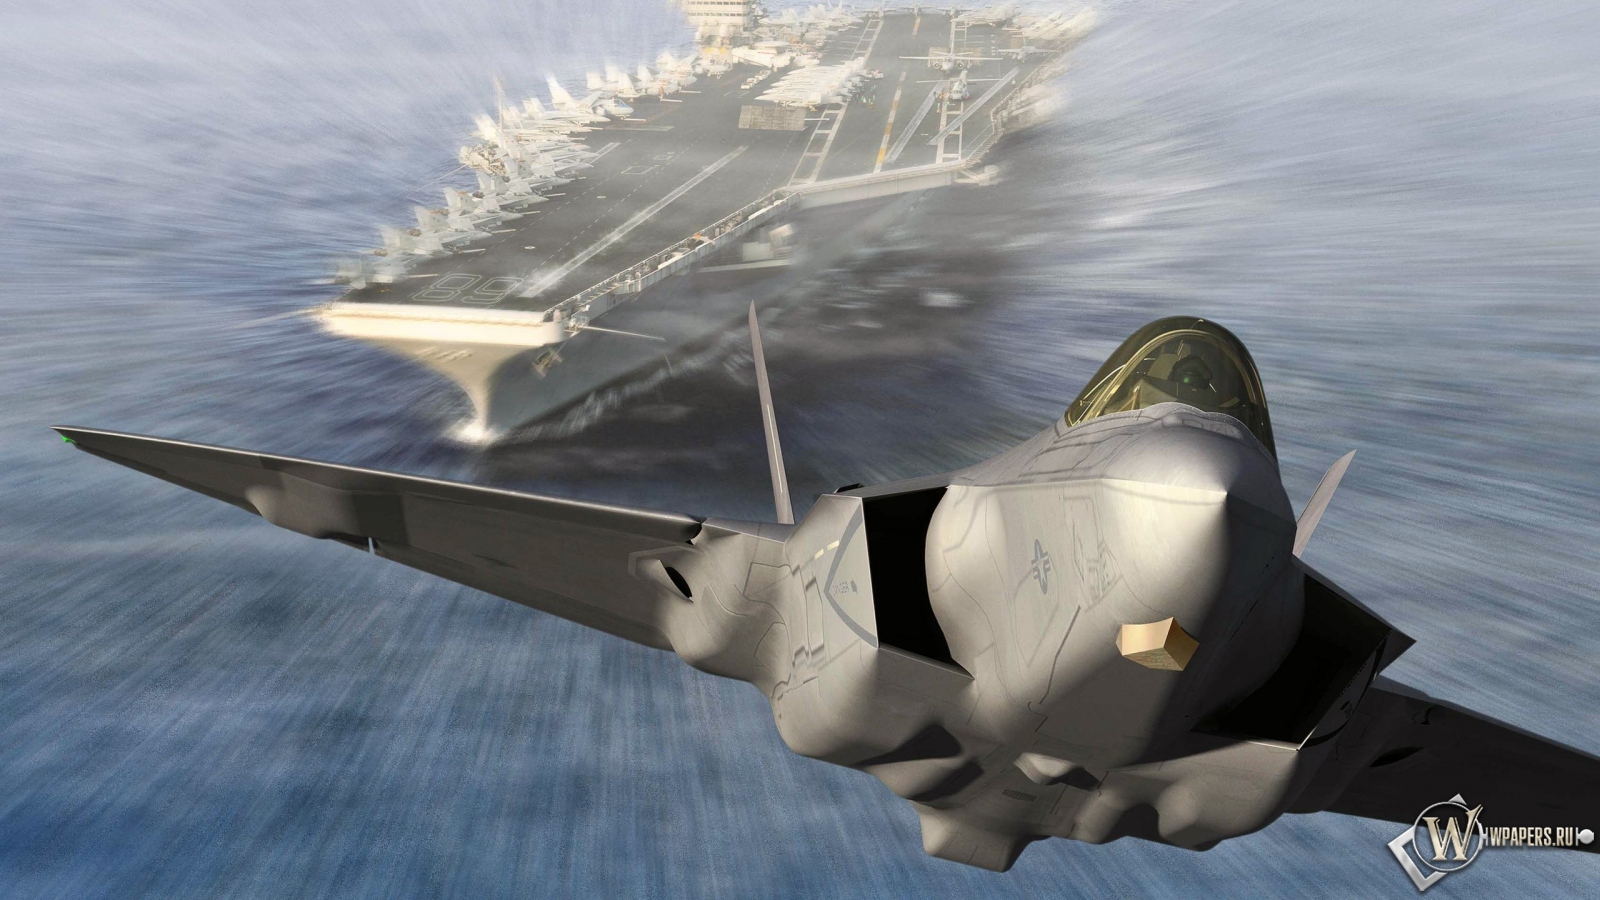 Запуск Lockheed Martin F-35C Lightning II из авианосца 1600x900